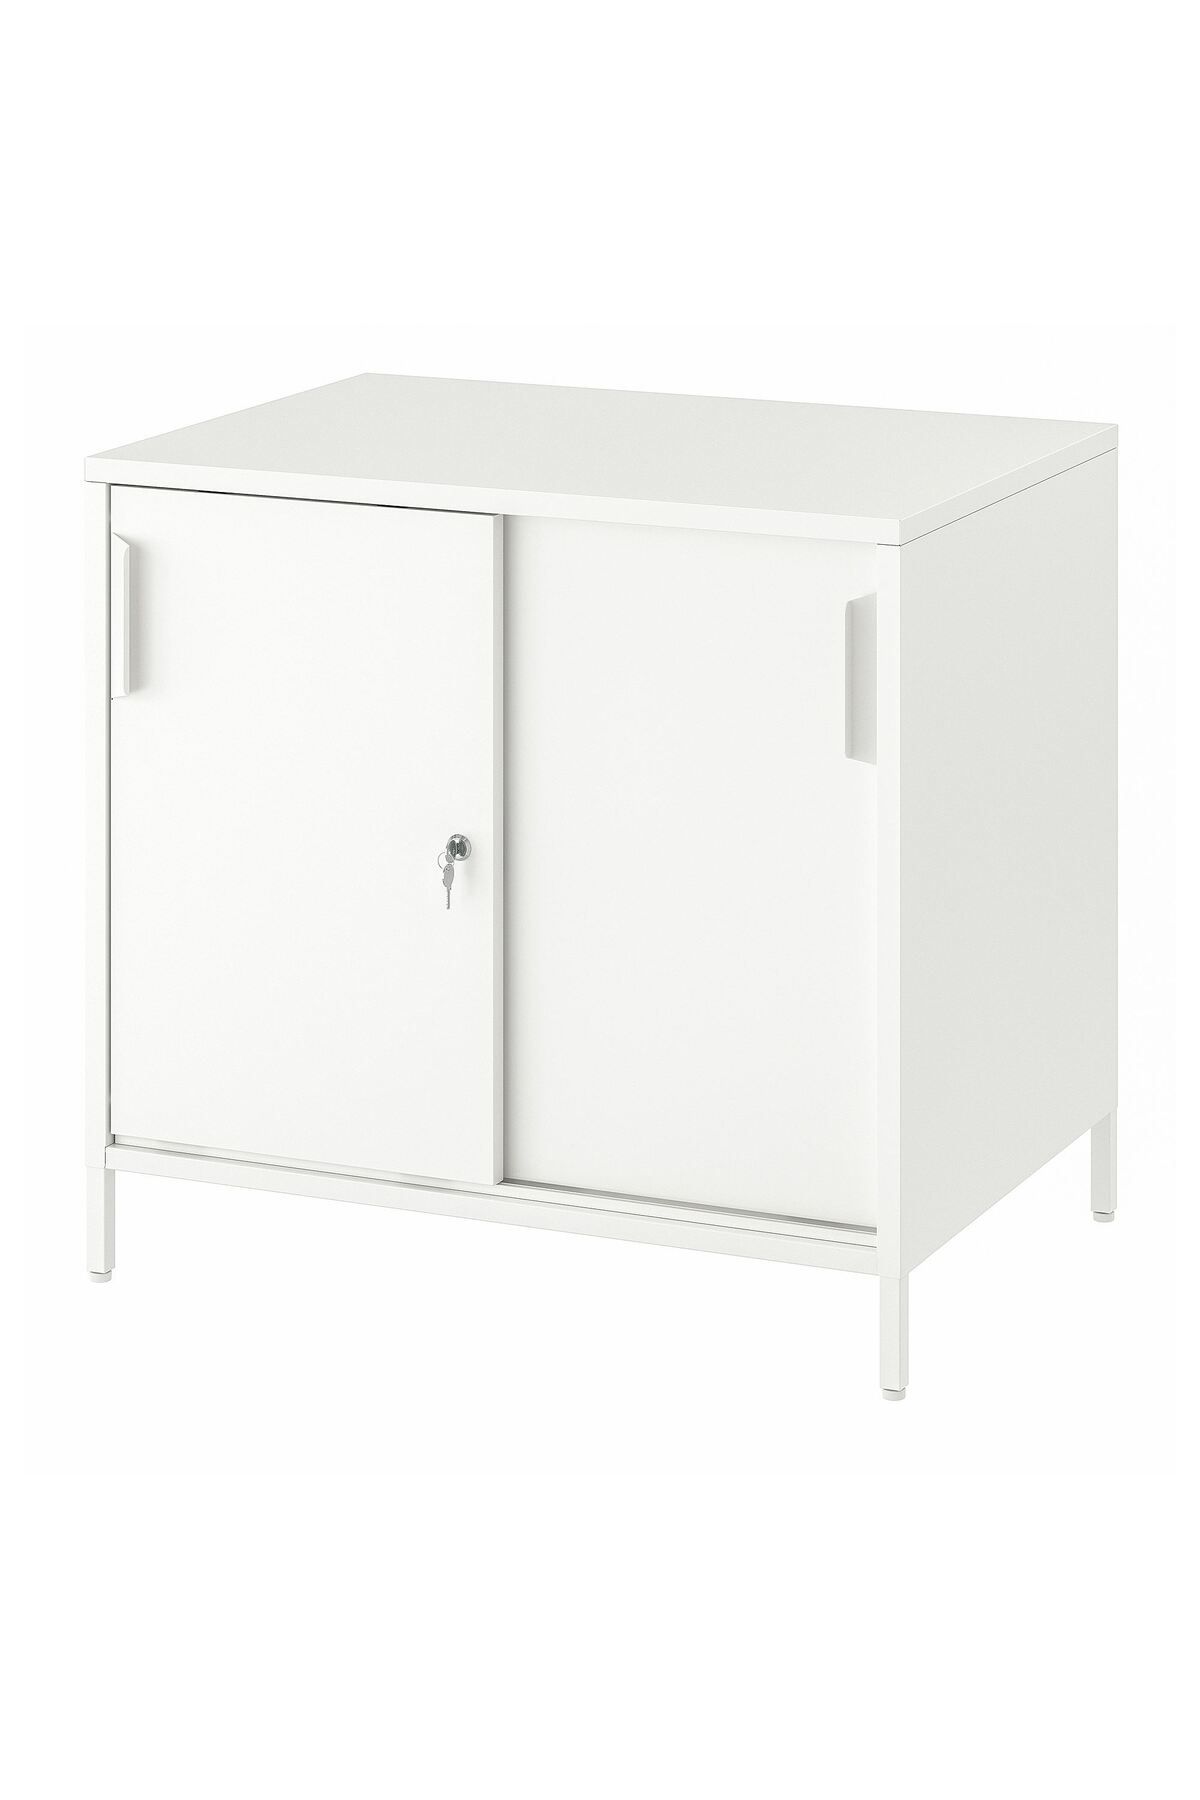 IKEA sürgü kapaklı dolap, beyaz, 80x75 cm